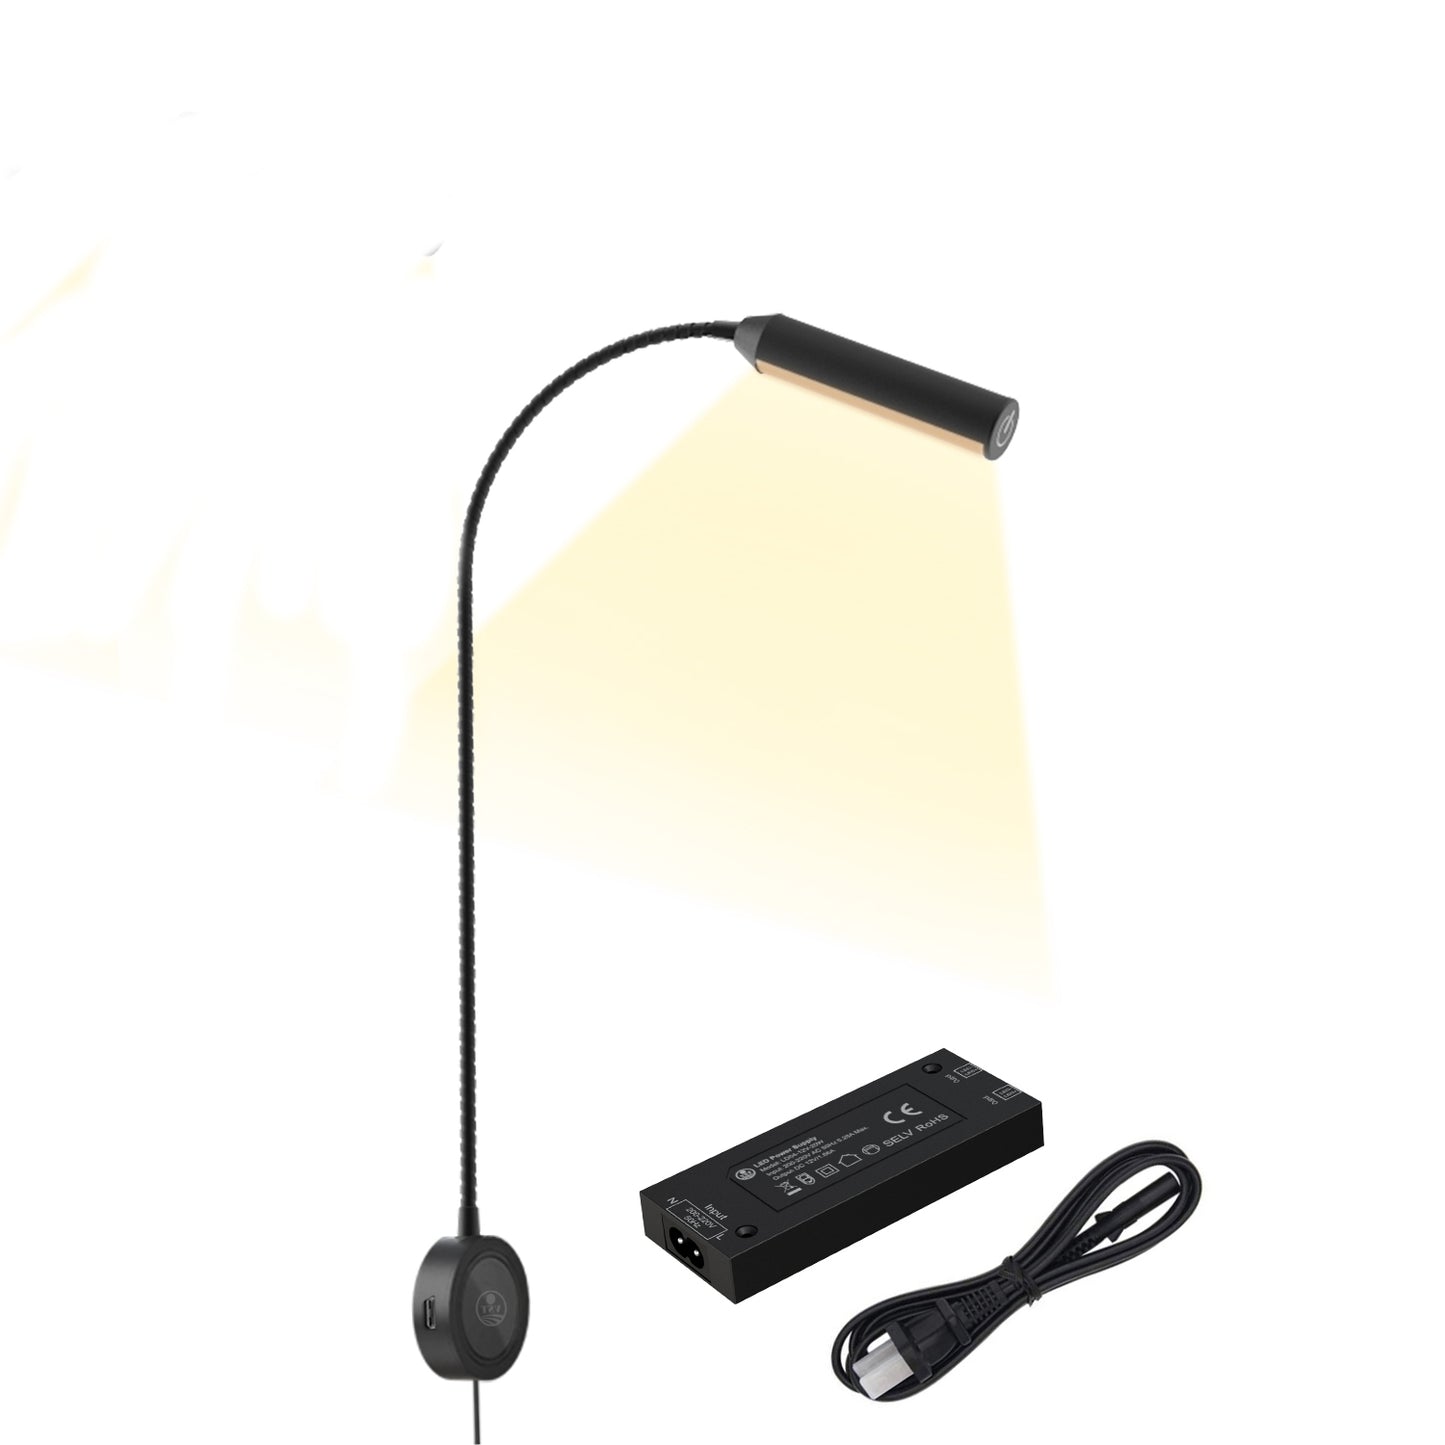 Adjustable Gooseneck Bedside Book Lights with USB Charging Port | VST